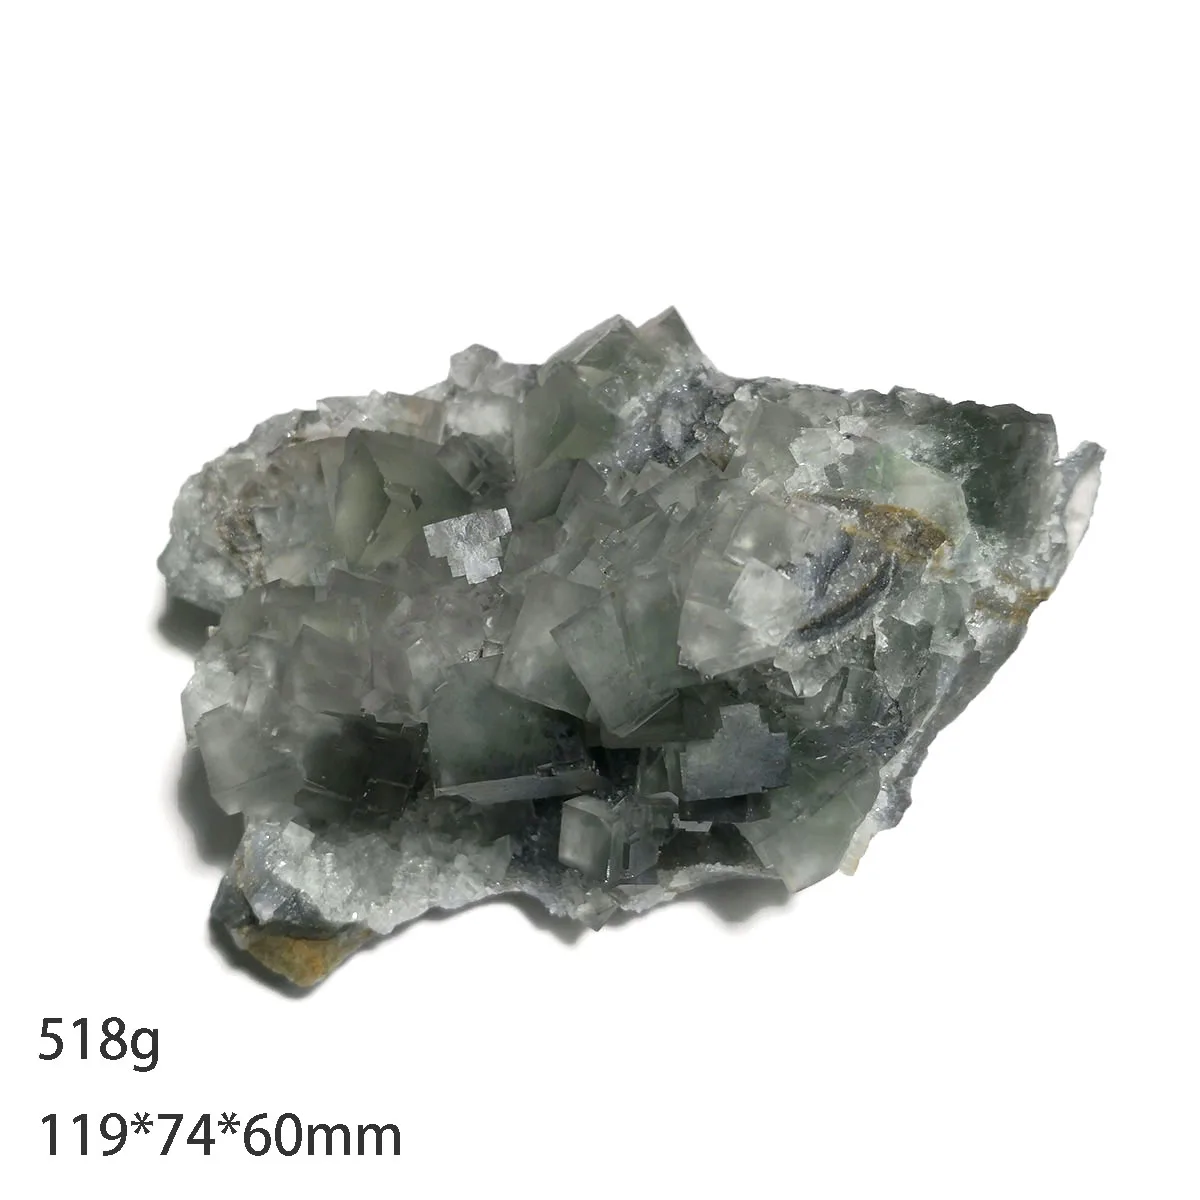 

518 г C8-2 натуральный зеленый флюорит, минеральный кристалл, образцы, подарки, украшения, коллекционные предметы из провинции Фуцзянь, Китай